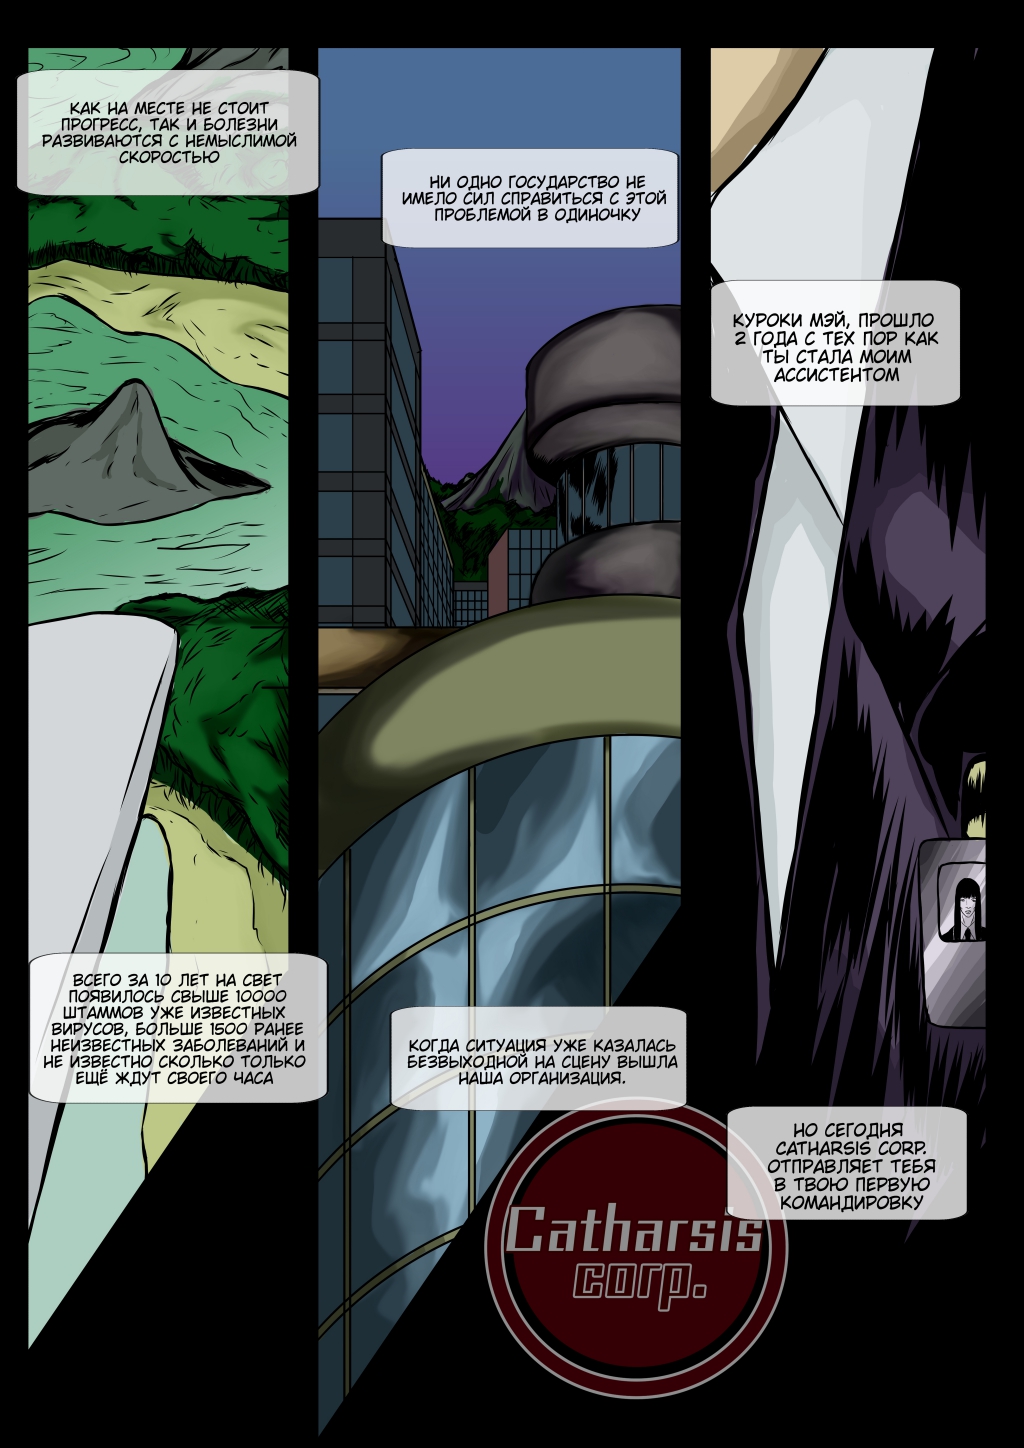 Комикс Catharsis corp.: выпуск №2